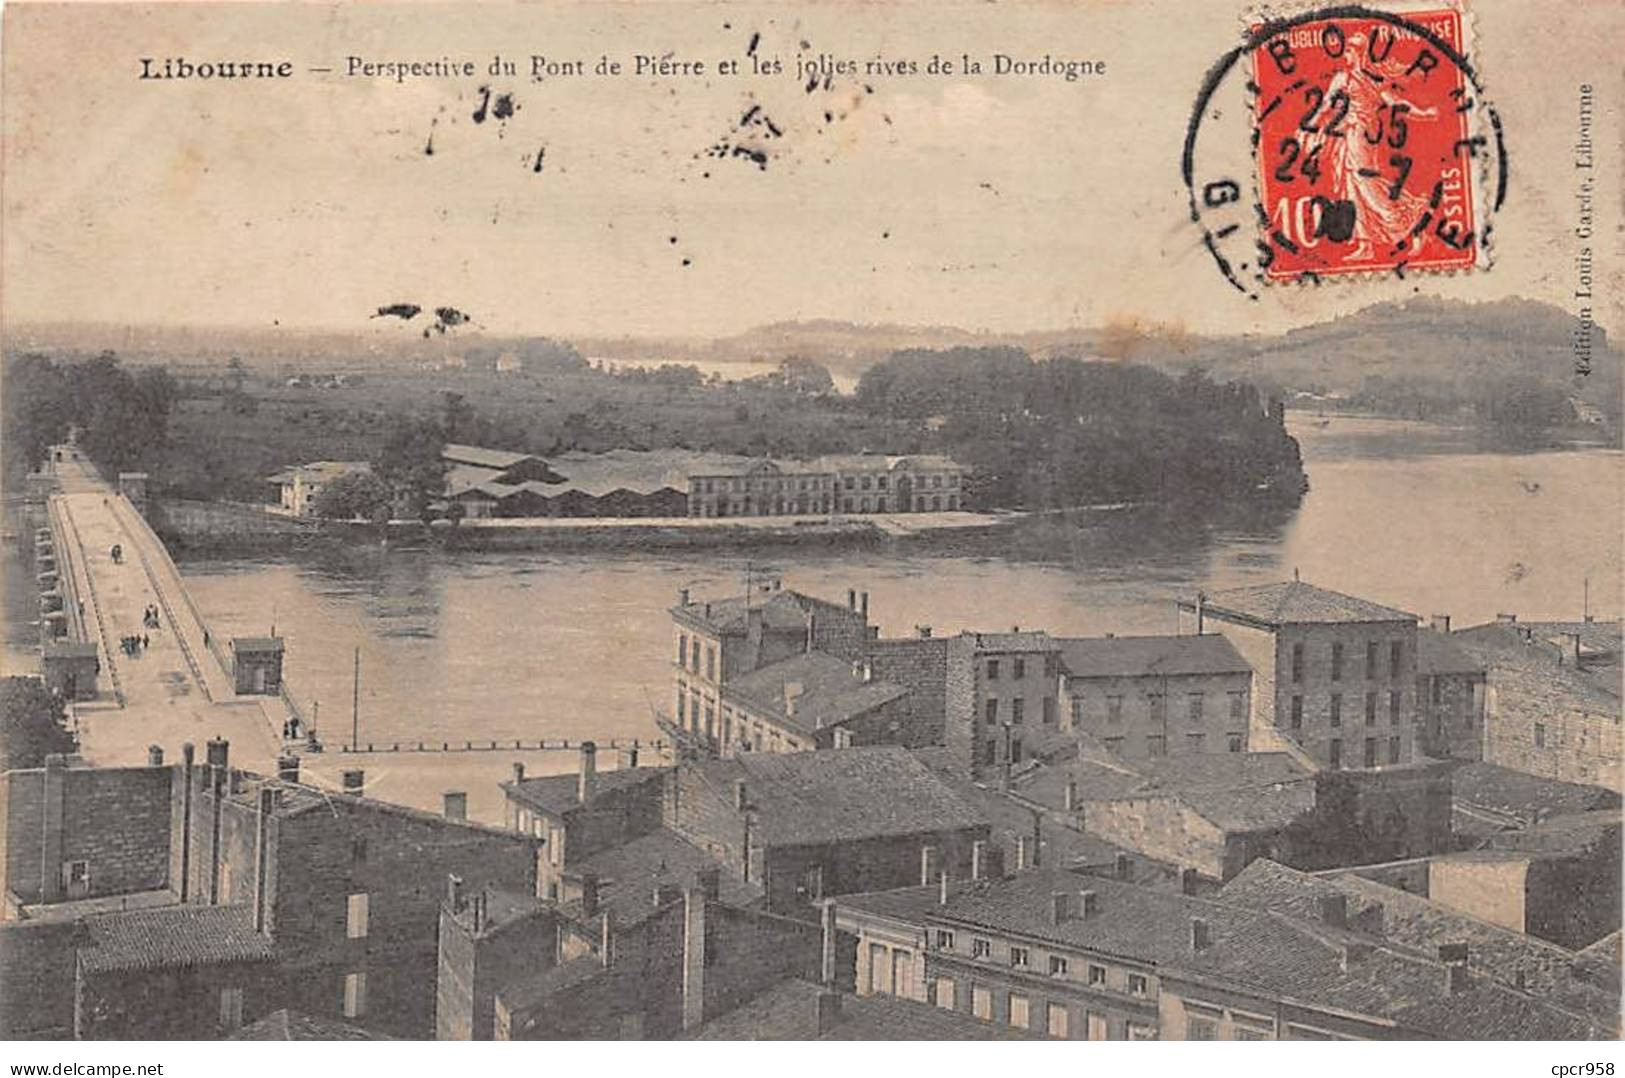 33 - LIBOURNE - SAN43395 - Perceptive Du Pont De Pierre Et Les Jolies Rives De La Dordogne - Libourne